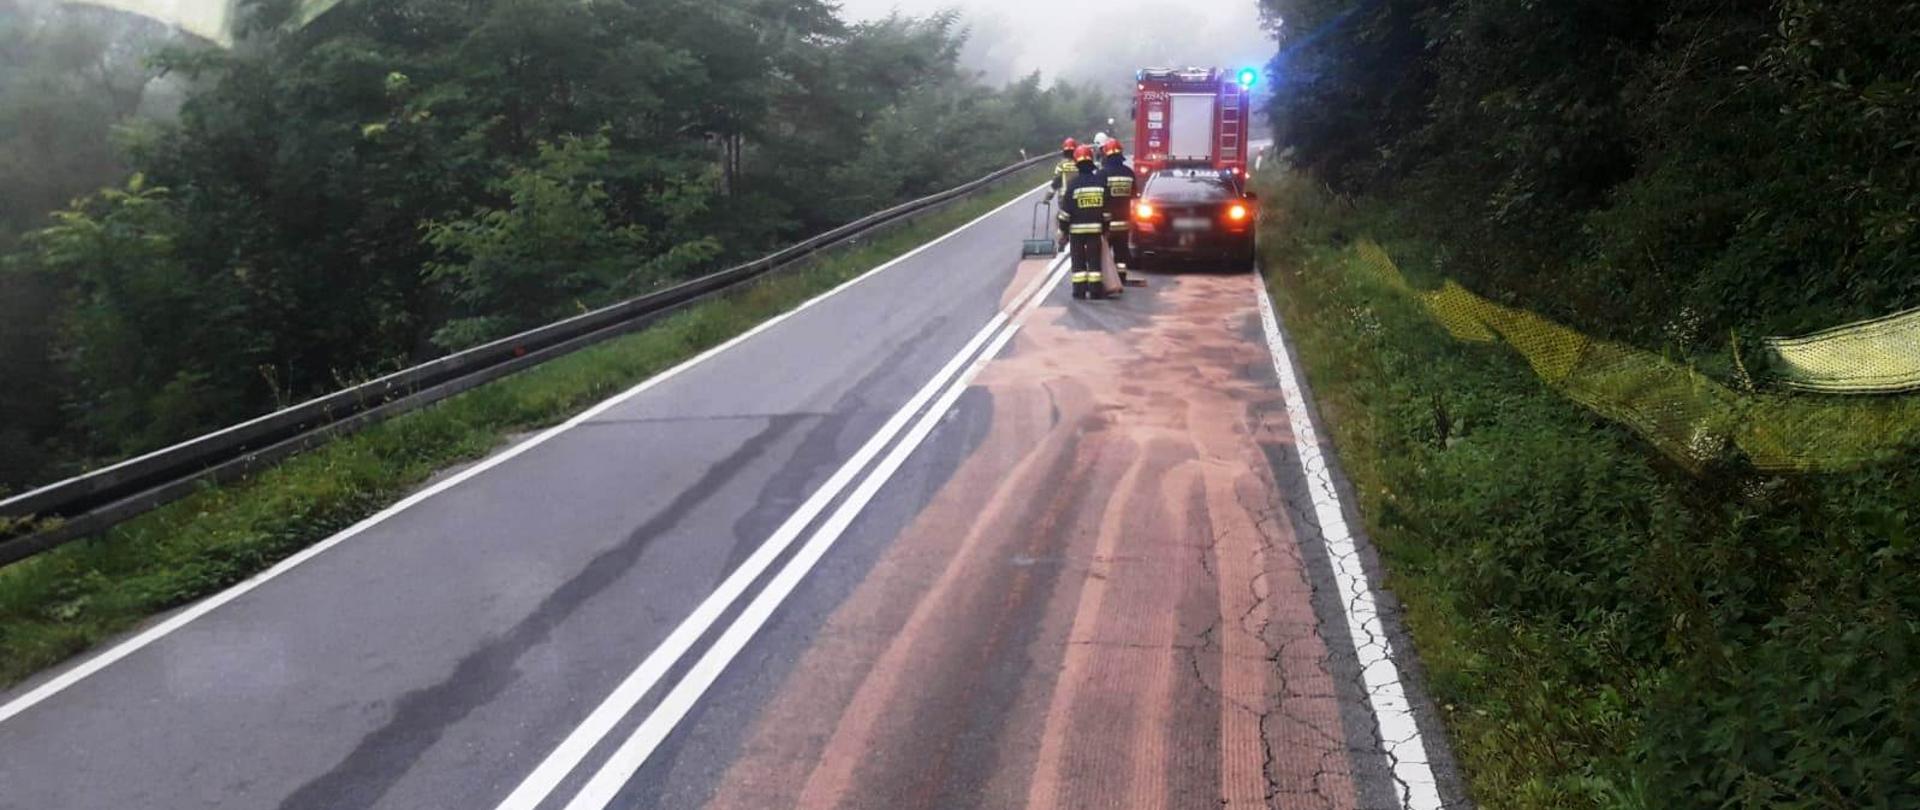 Samochód pożarniczy na pasie drogi a przed nim i smuga z sorbentu.Obok samochodu strażacy.